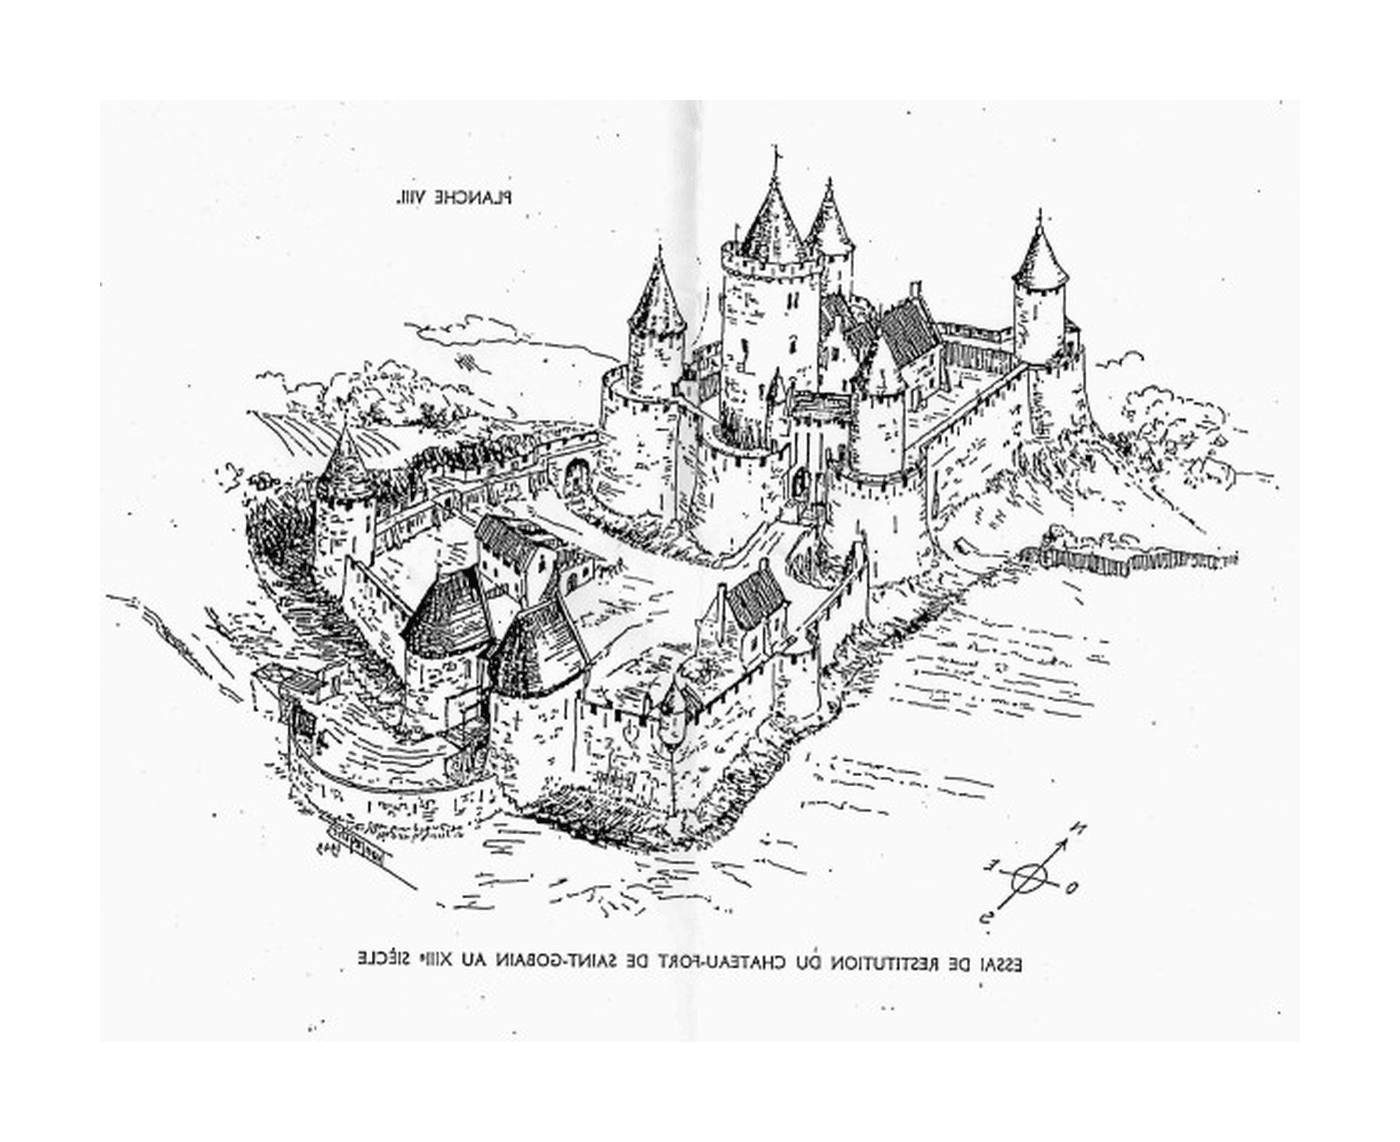  Замок Средневековья, расположенный в XIV веке в Сен-Гобаине 